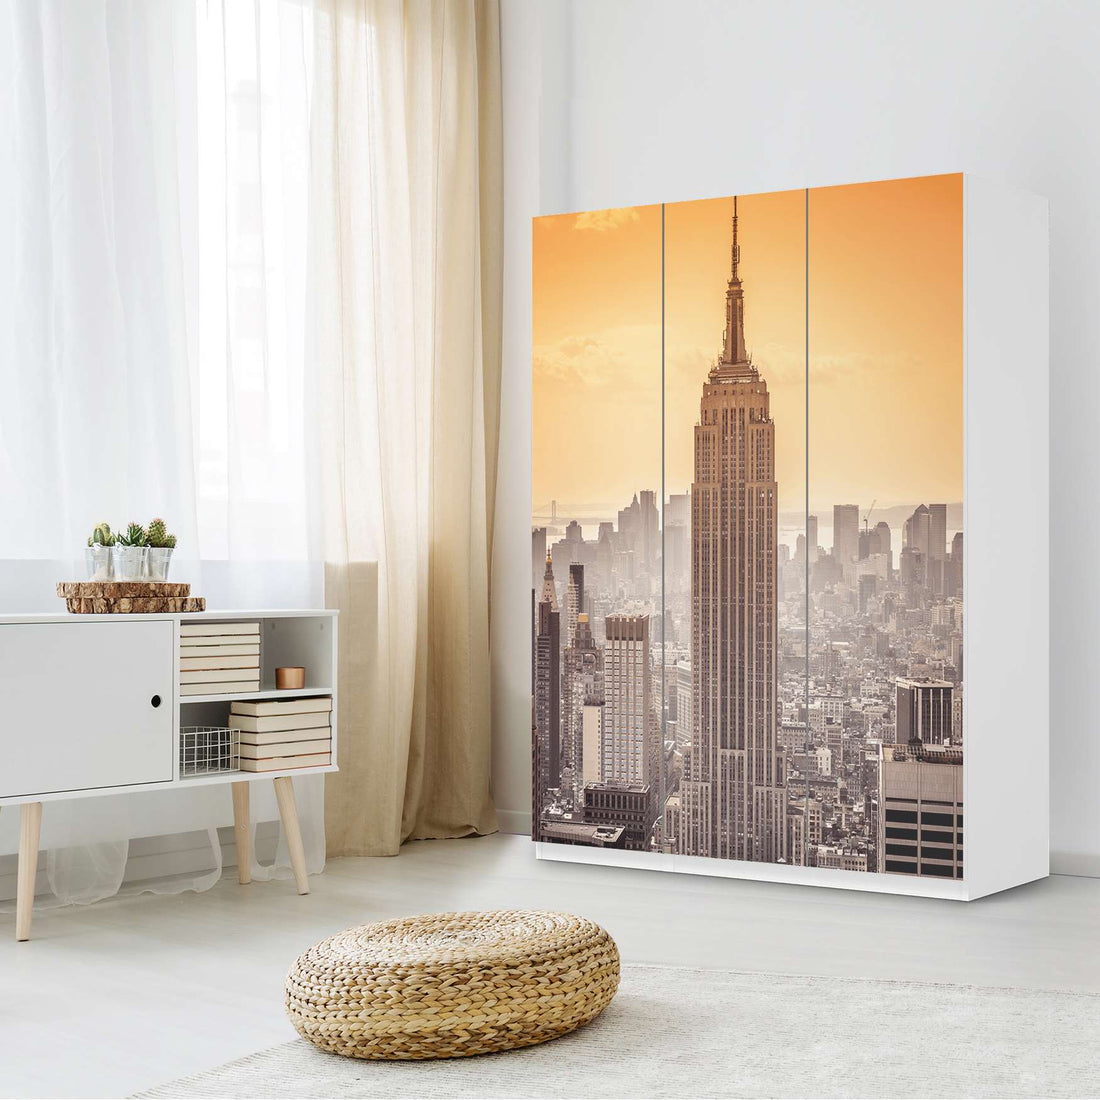 Folie für Möbel Empire State Building - IKEA Pax Schrank 201 cm Höhe - 3 Türen - Schlafzimmer